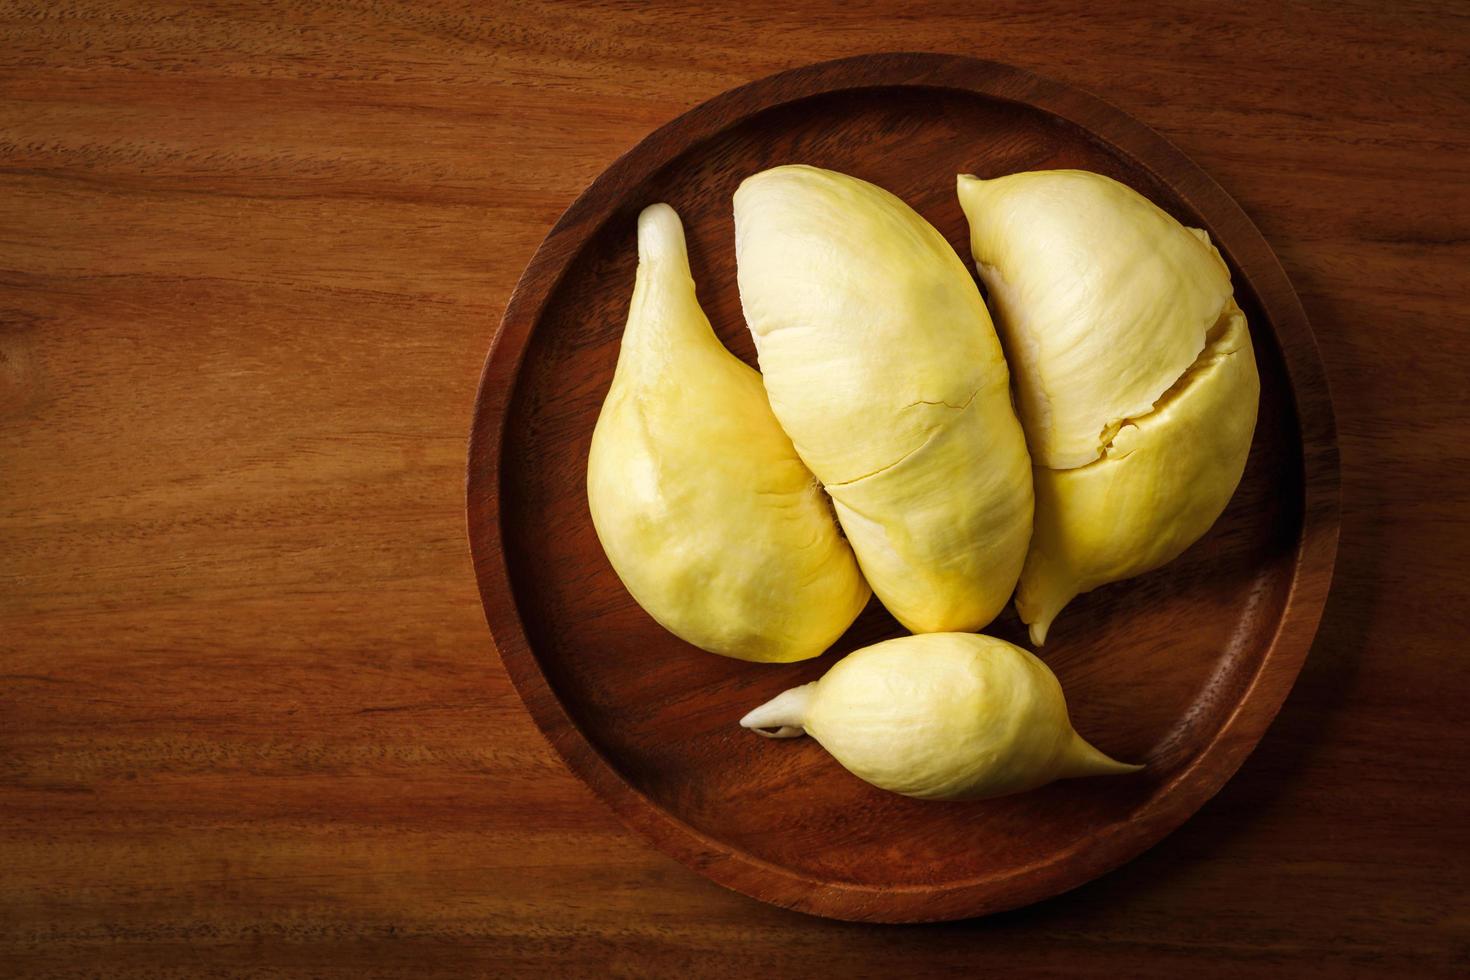 durian, könig der tropischen früchte in südostasien, thailand. beliebtes obstfrischdessert in thailand serviert. seine Frucht süß, buttrig in der Textur, sehr wenig Saft. Durian hat einen bekanntermaßen starken Geruch foto